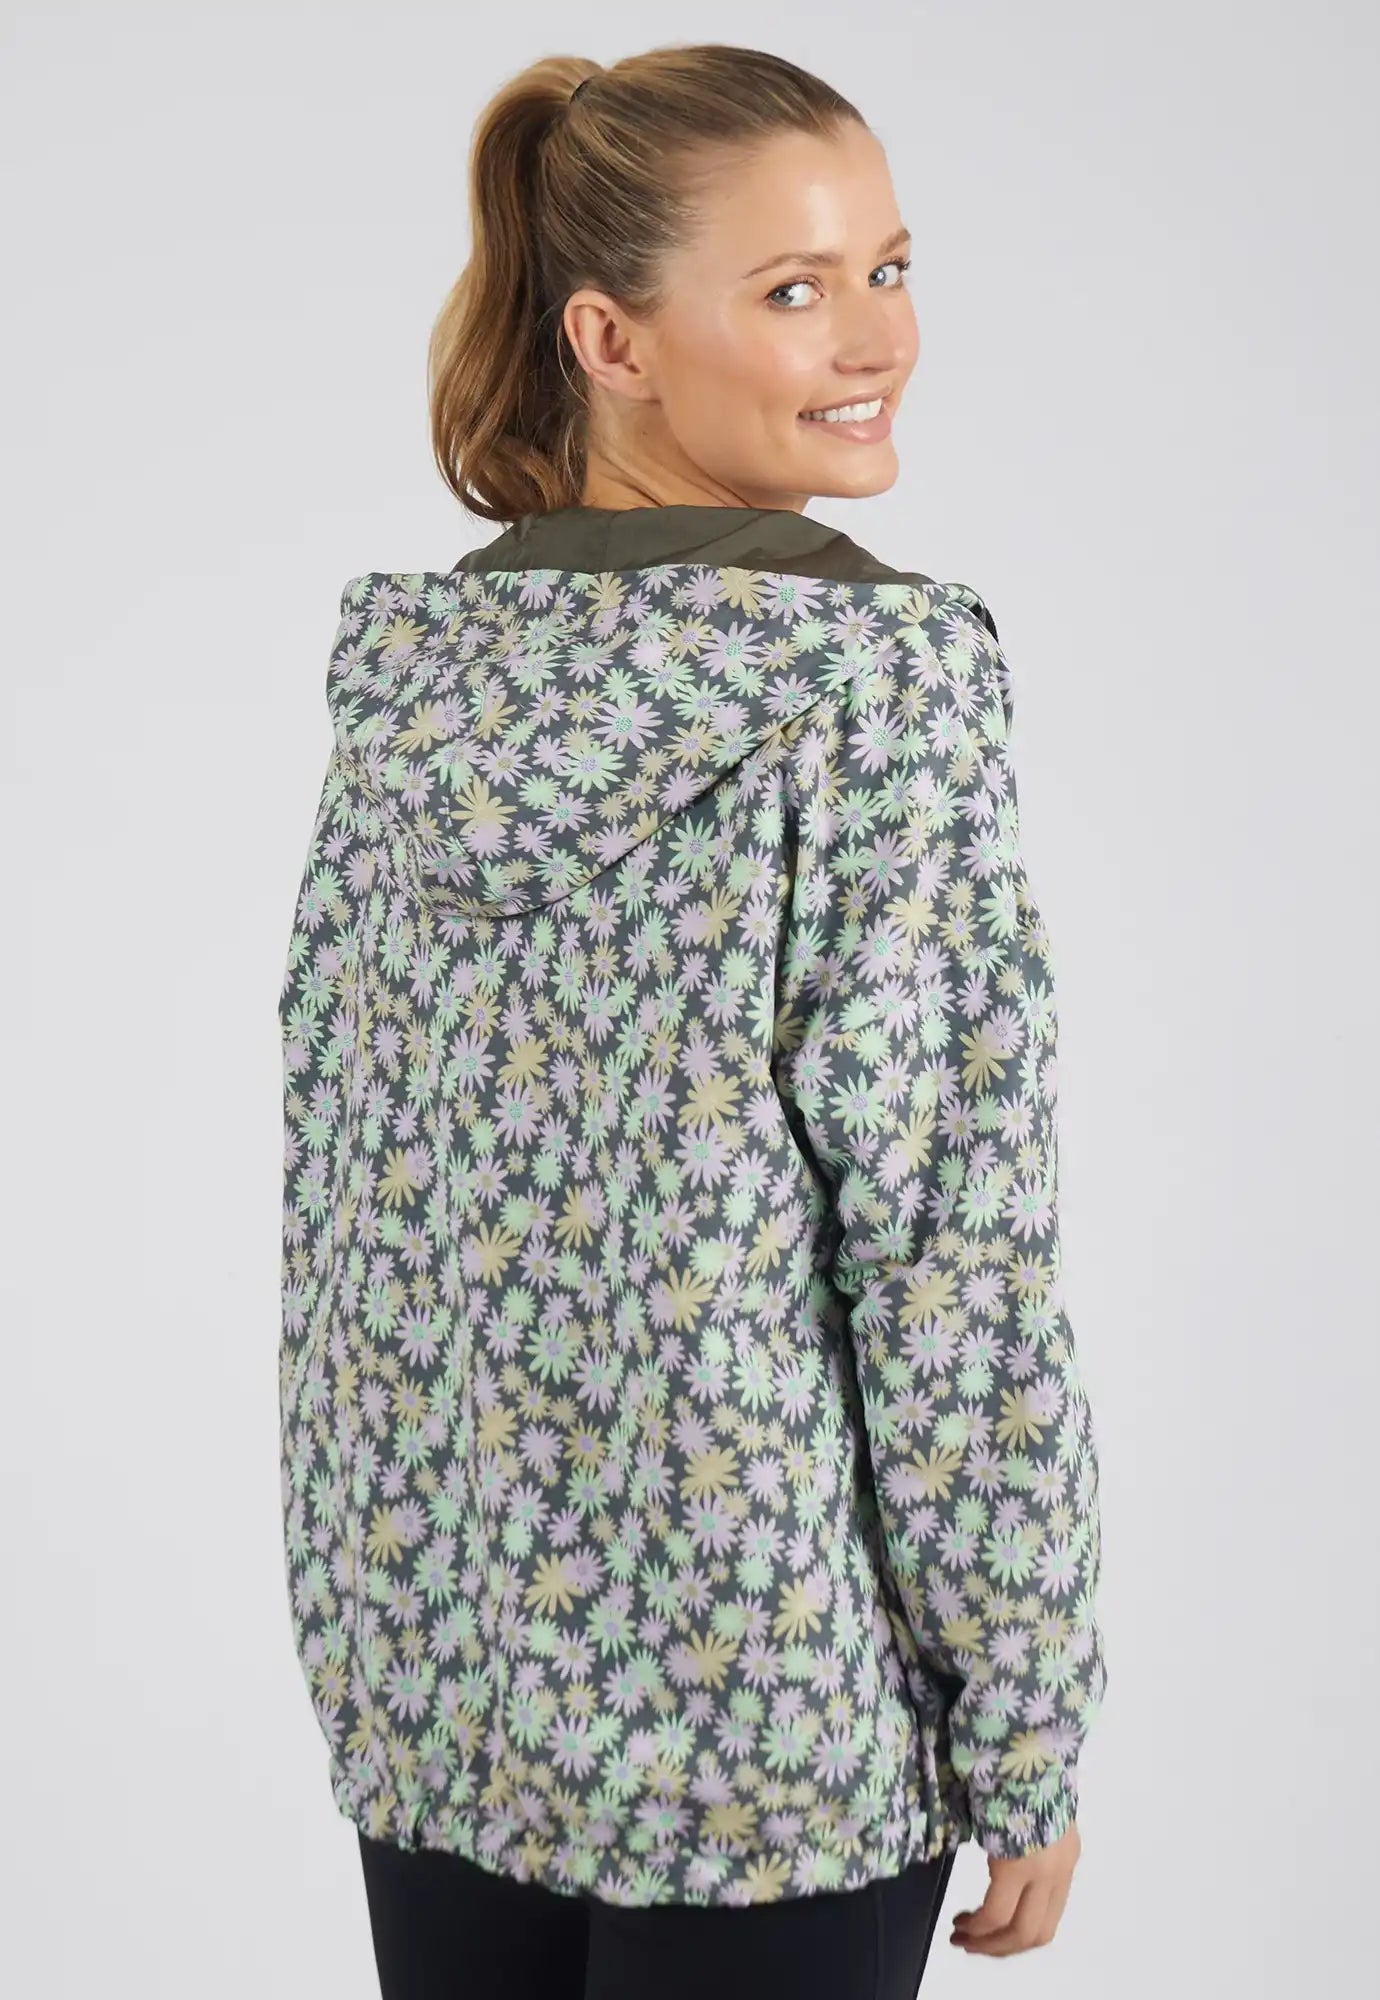 foxwood - reversible spray jacket - khaki floral